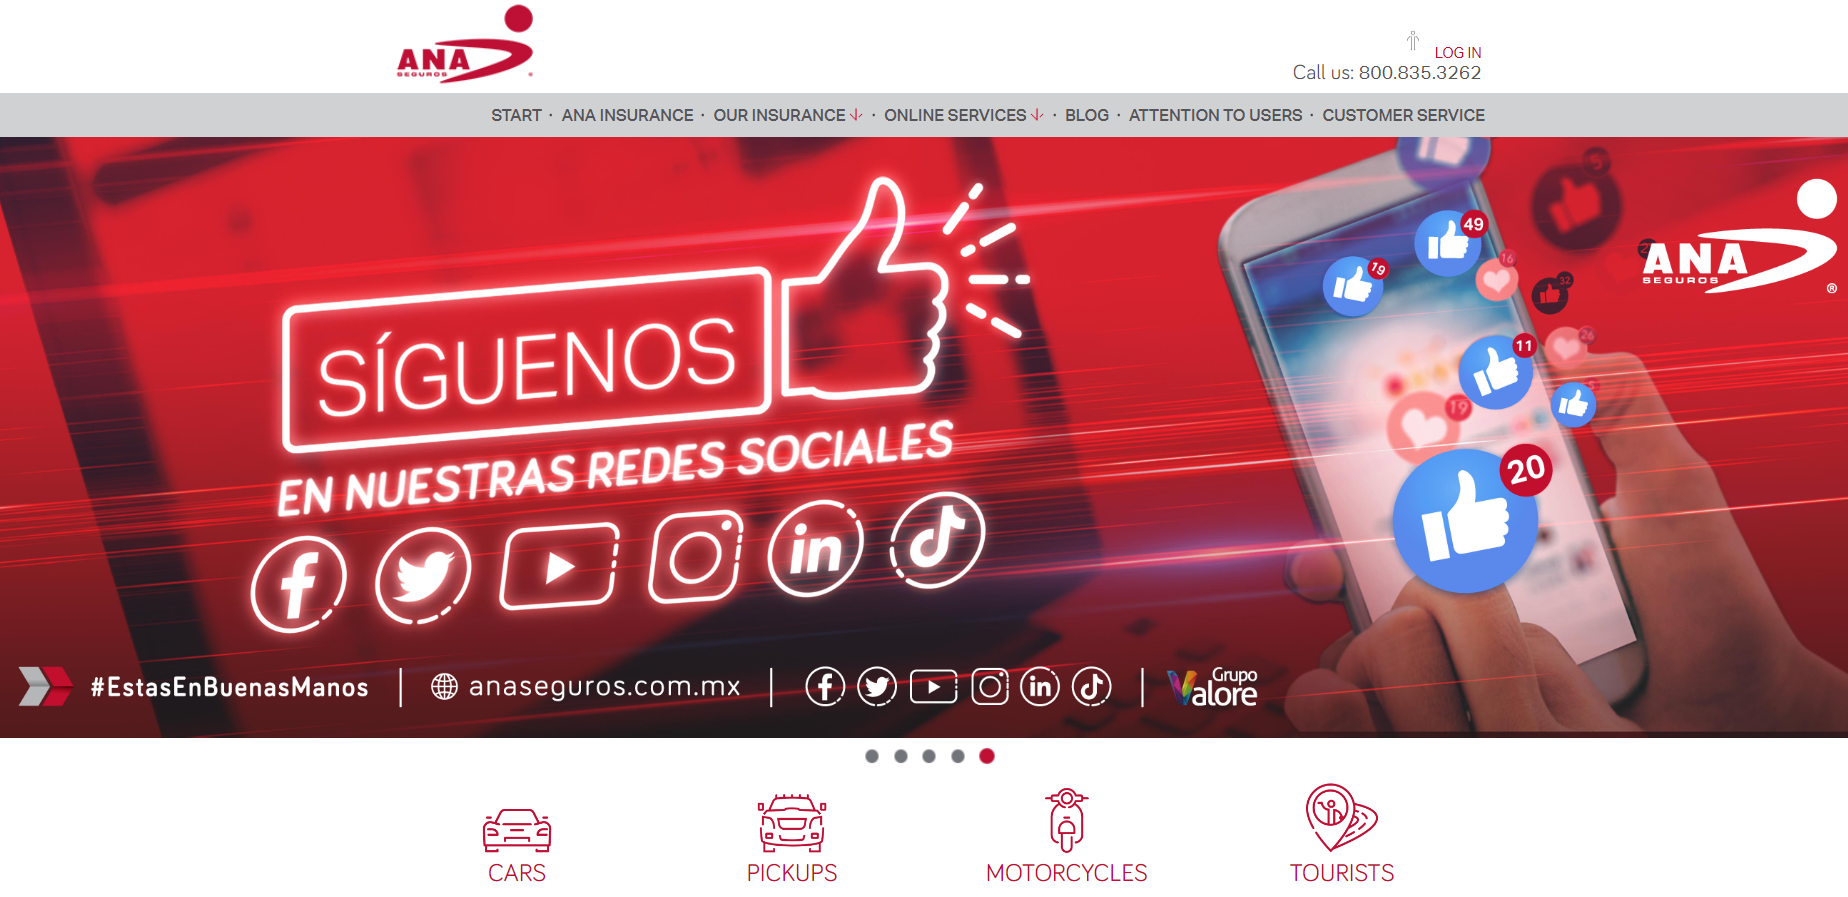 Ana Compania De Seguros Homepage